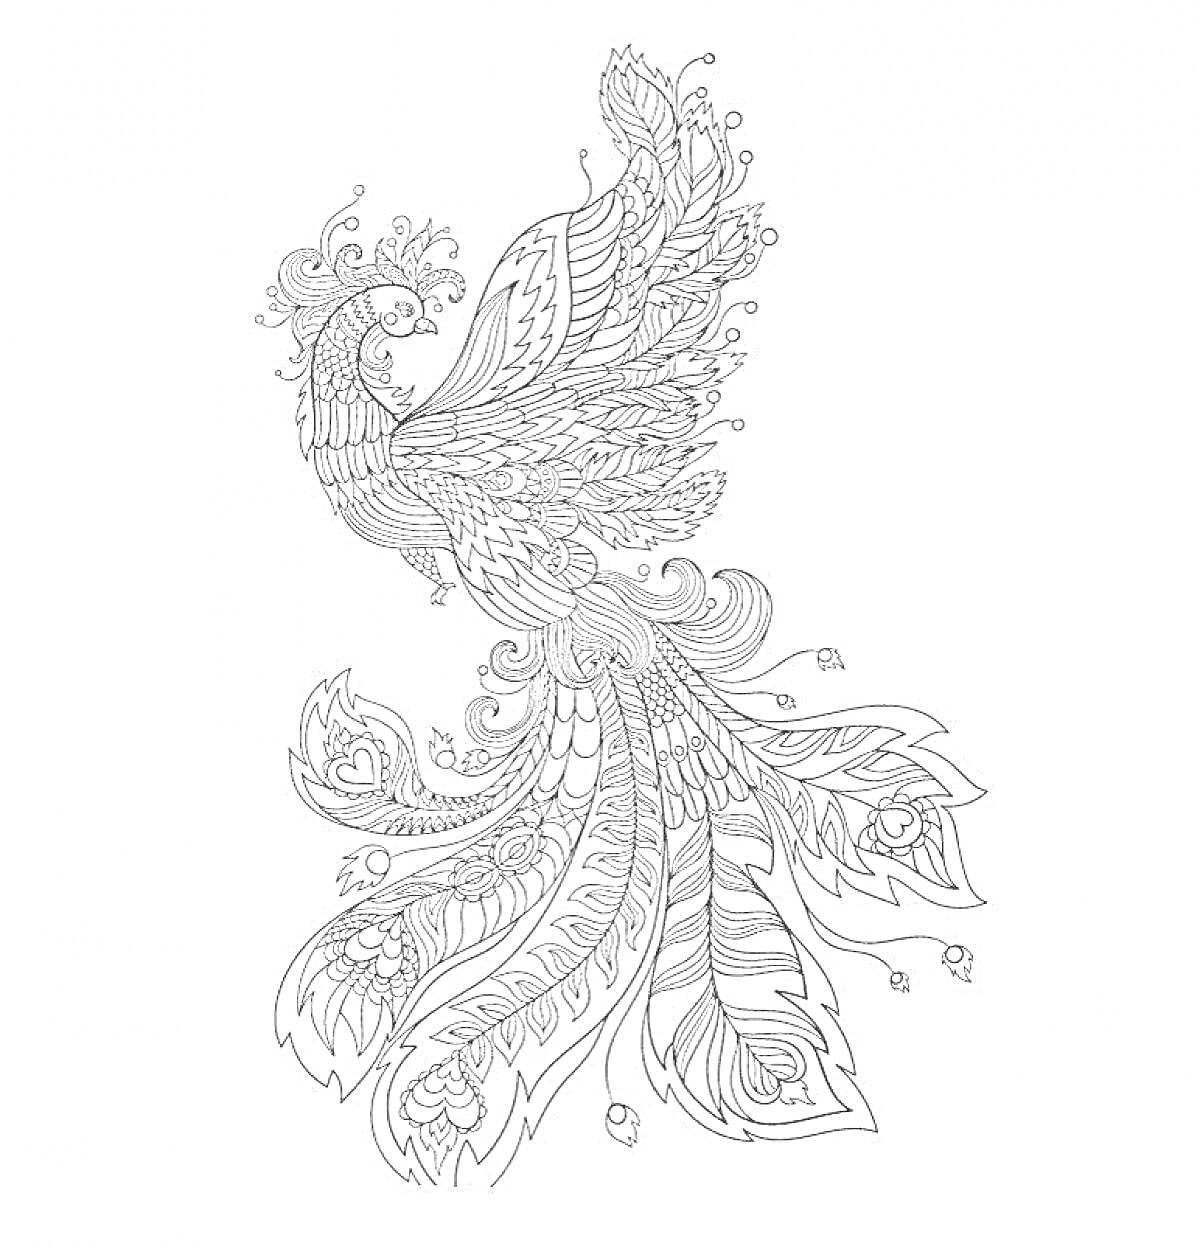 Раскраска Феникс с распущенными крыльями, узорчатым хвостом и декоративными элементами